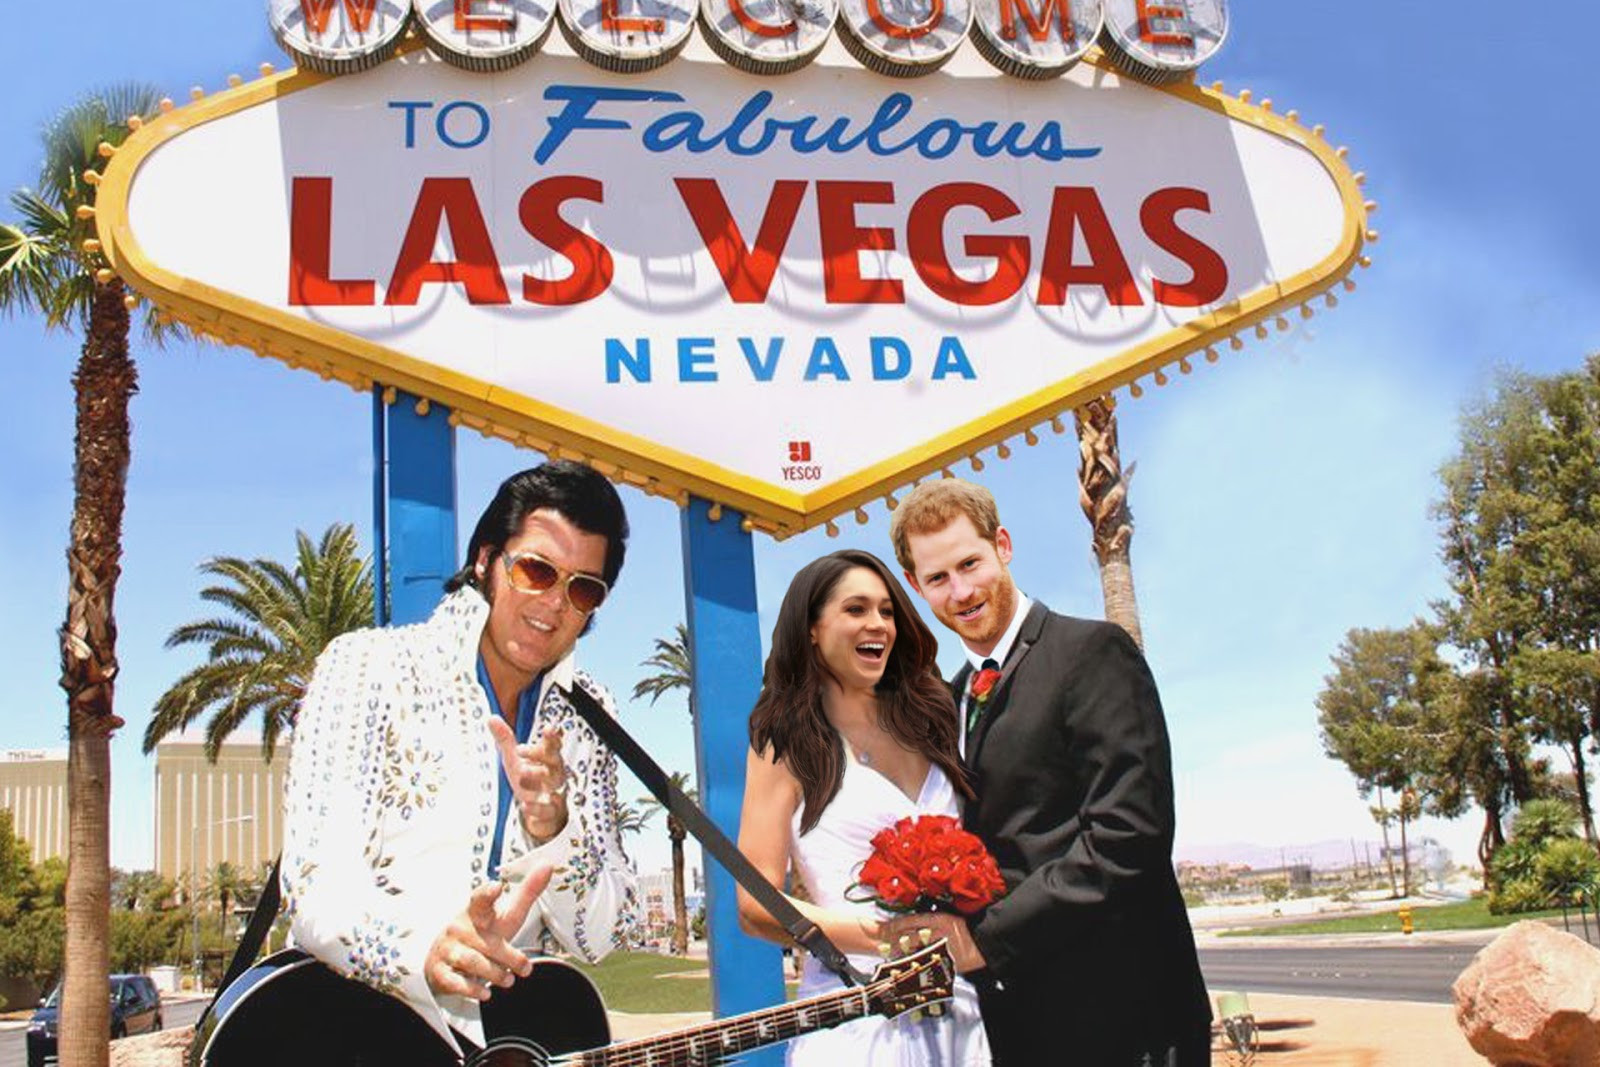 Hochzeit In Las Vegas
 Der Postillon Royal Wedding nach spontaner 20$ Hochzeit